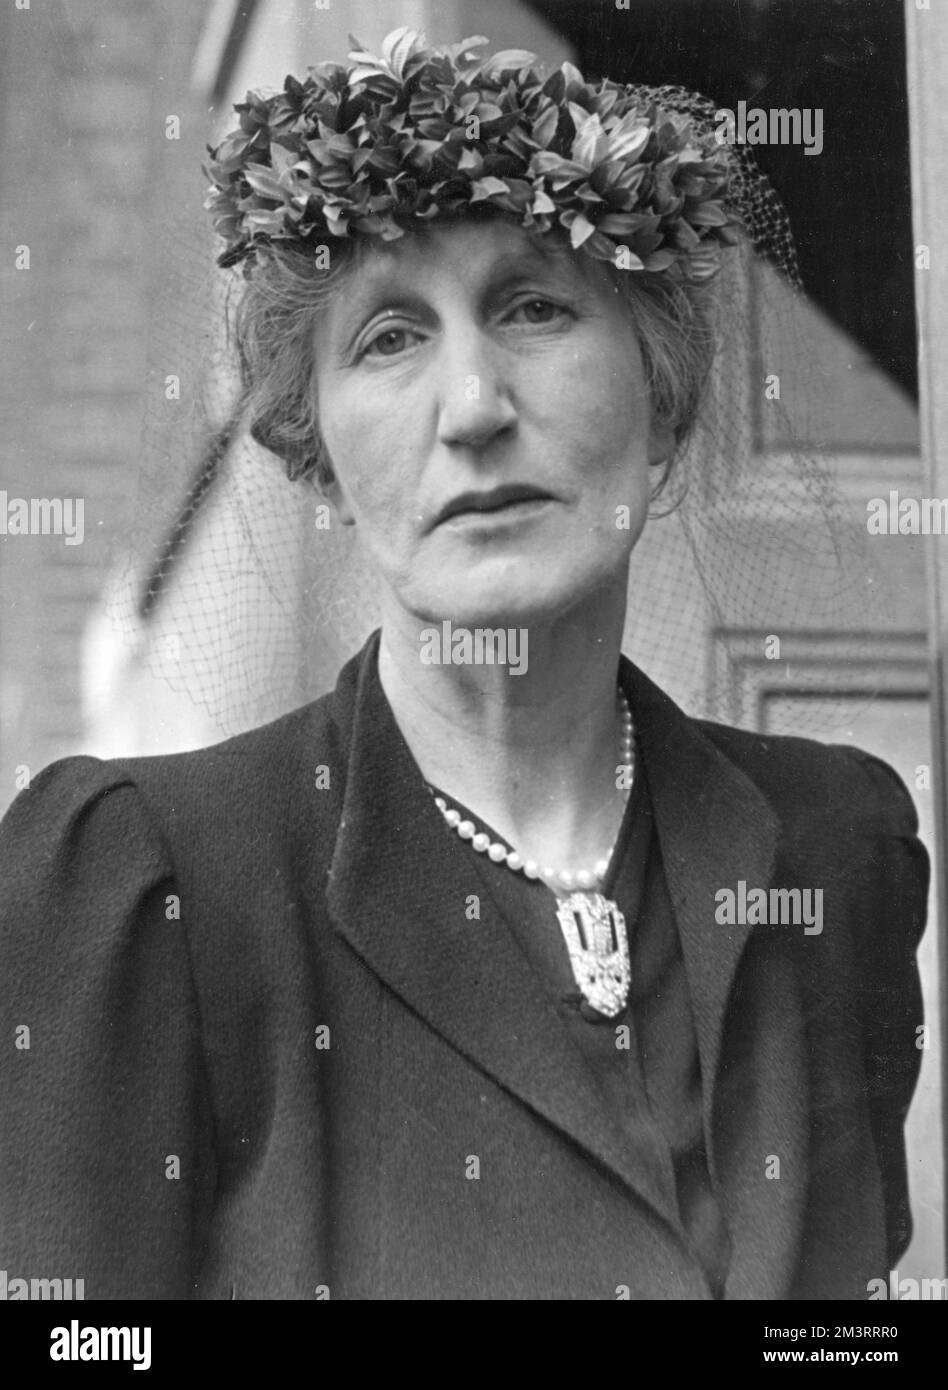 Violet Bonham-carter (1887-1969), née Asquith, politicien libéral et gouverneur de la BBC. Photographié pendant l'Assemblée libérale, où elle a présidé. Date: 1946 Banque D'Images